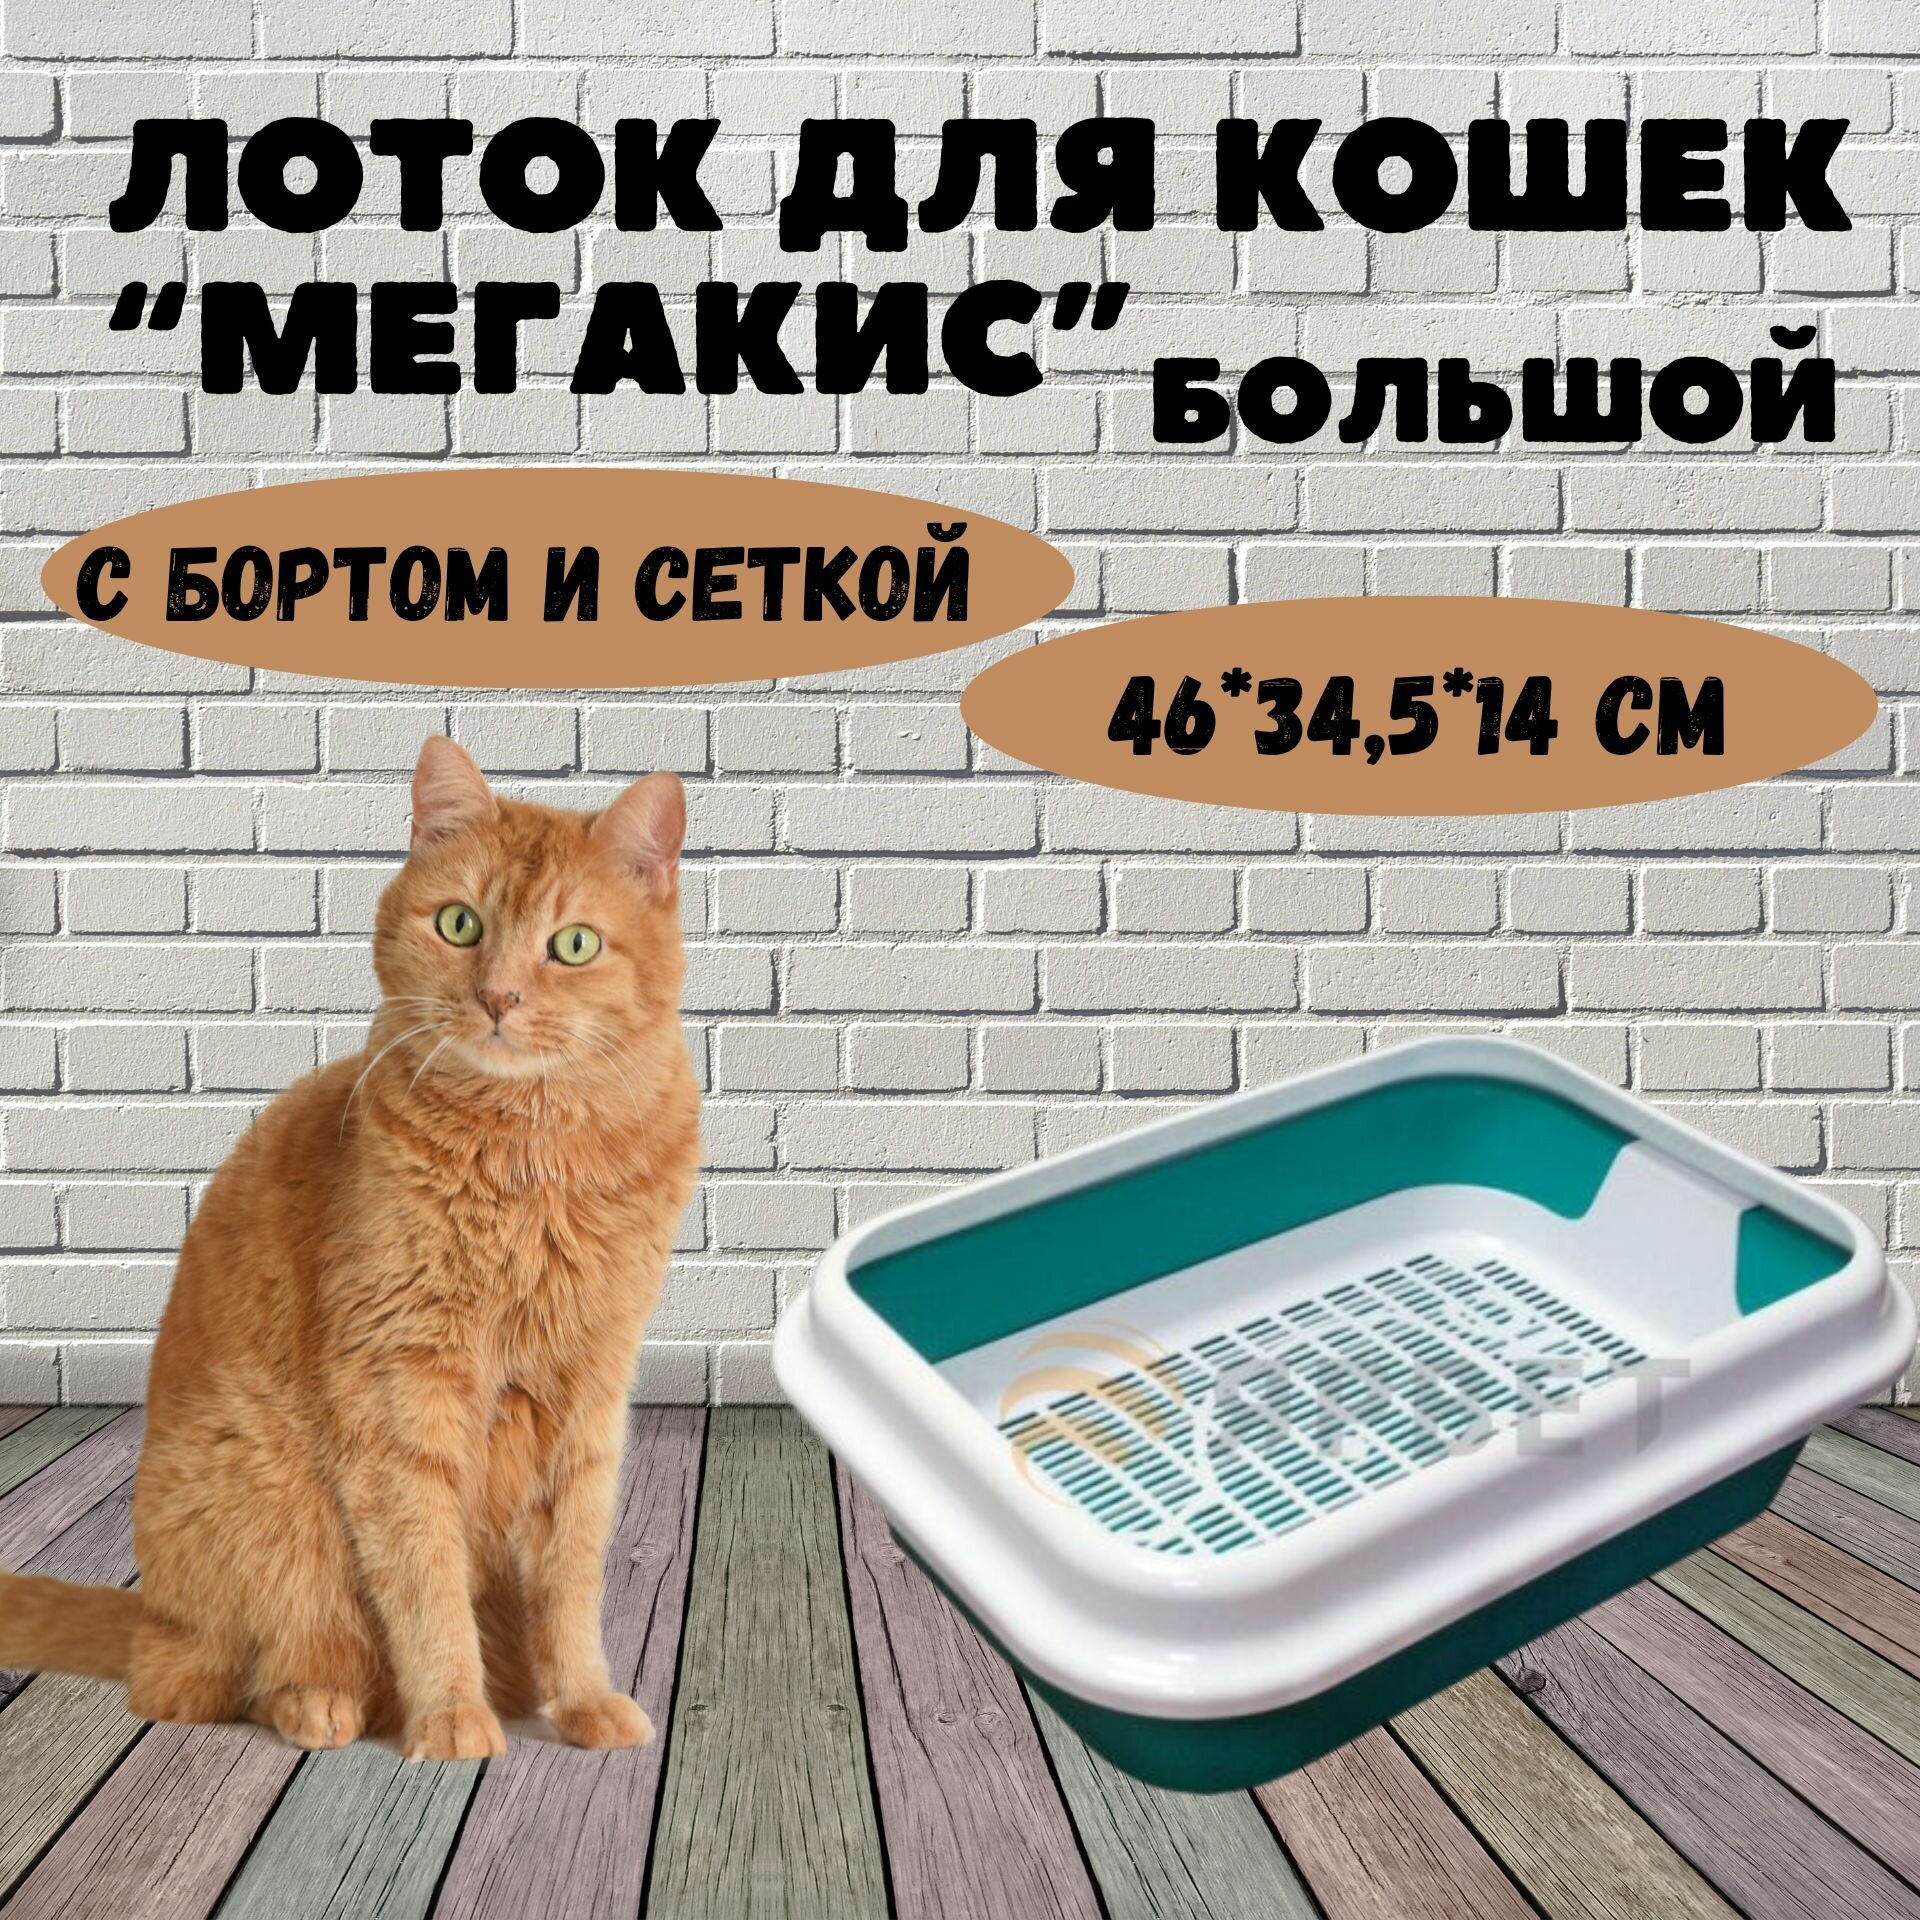 Лоток для кошек МегаКис с сеткой и рамкой, цветной, 46*34,5*14 см - фотография № 1